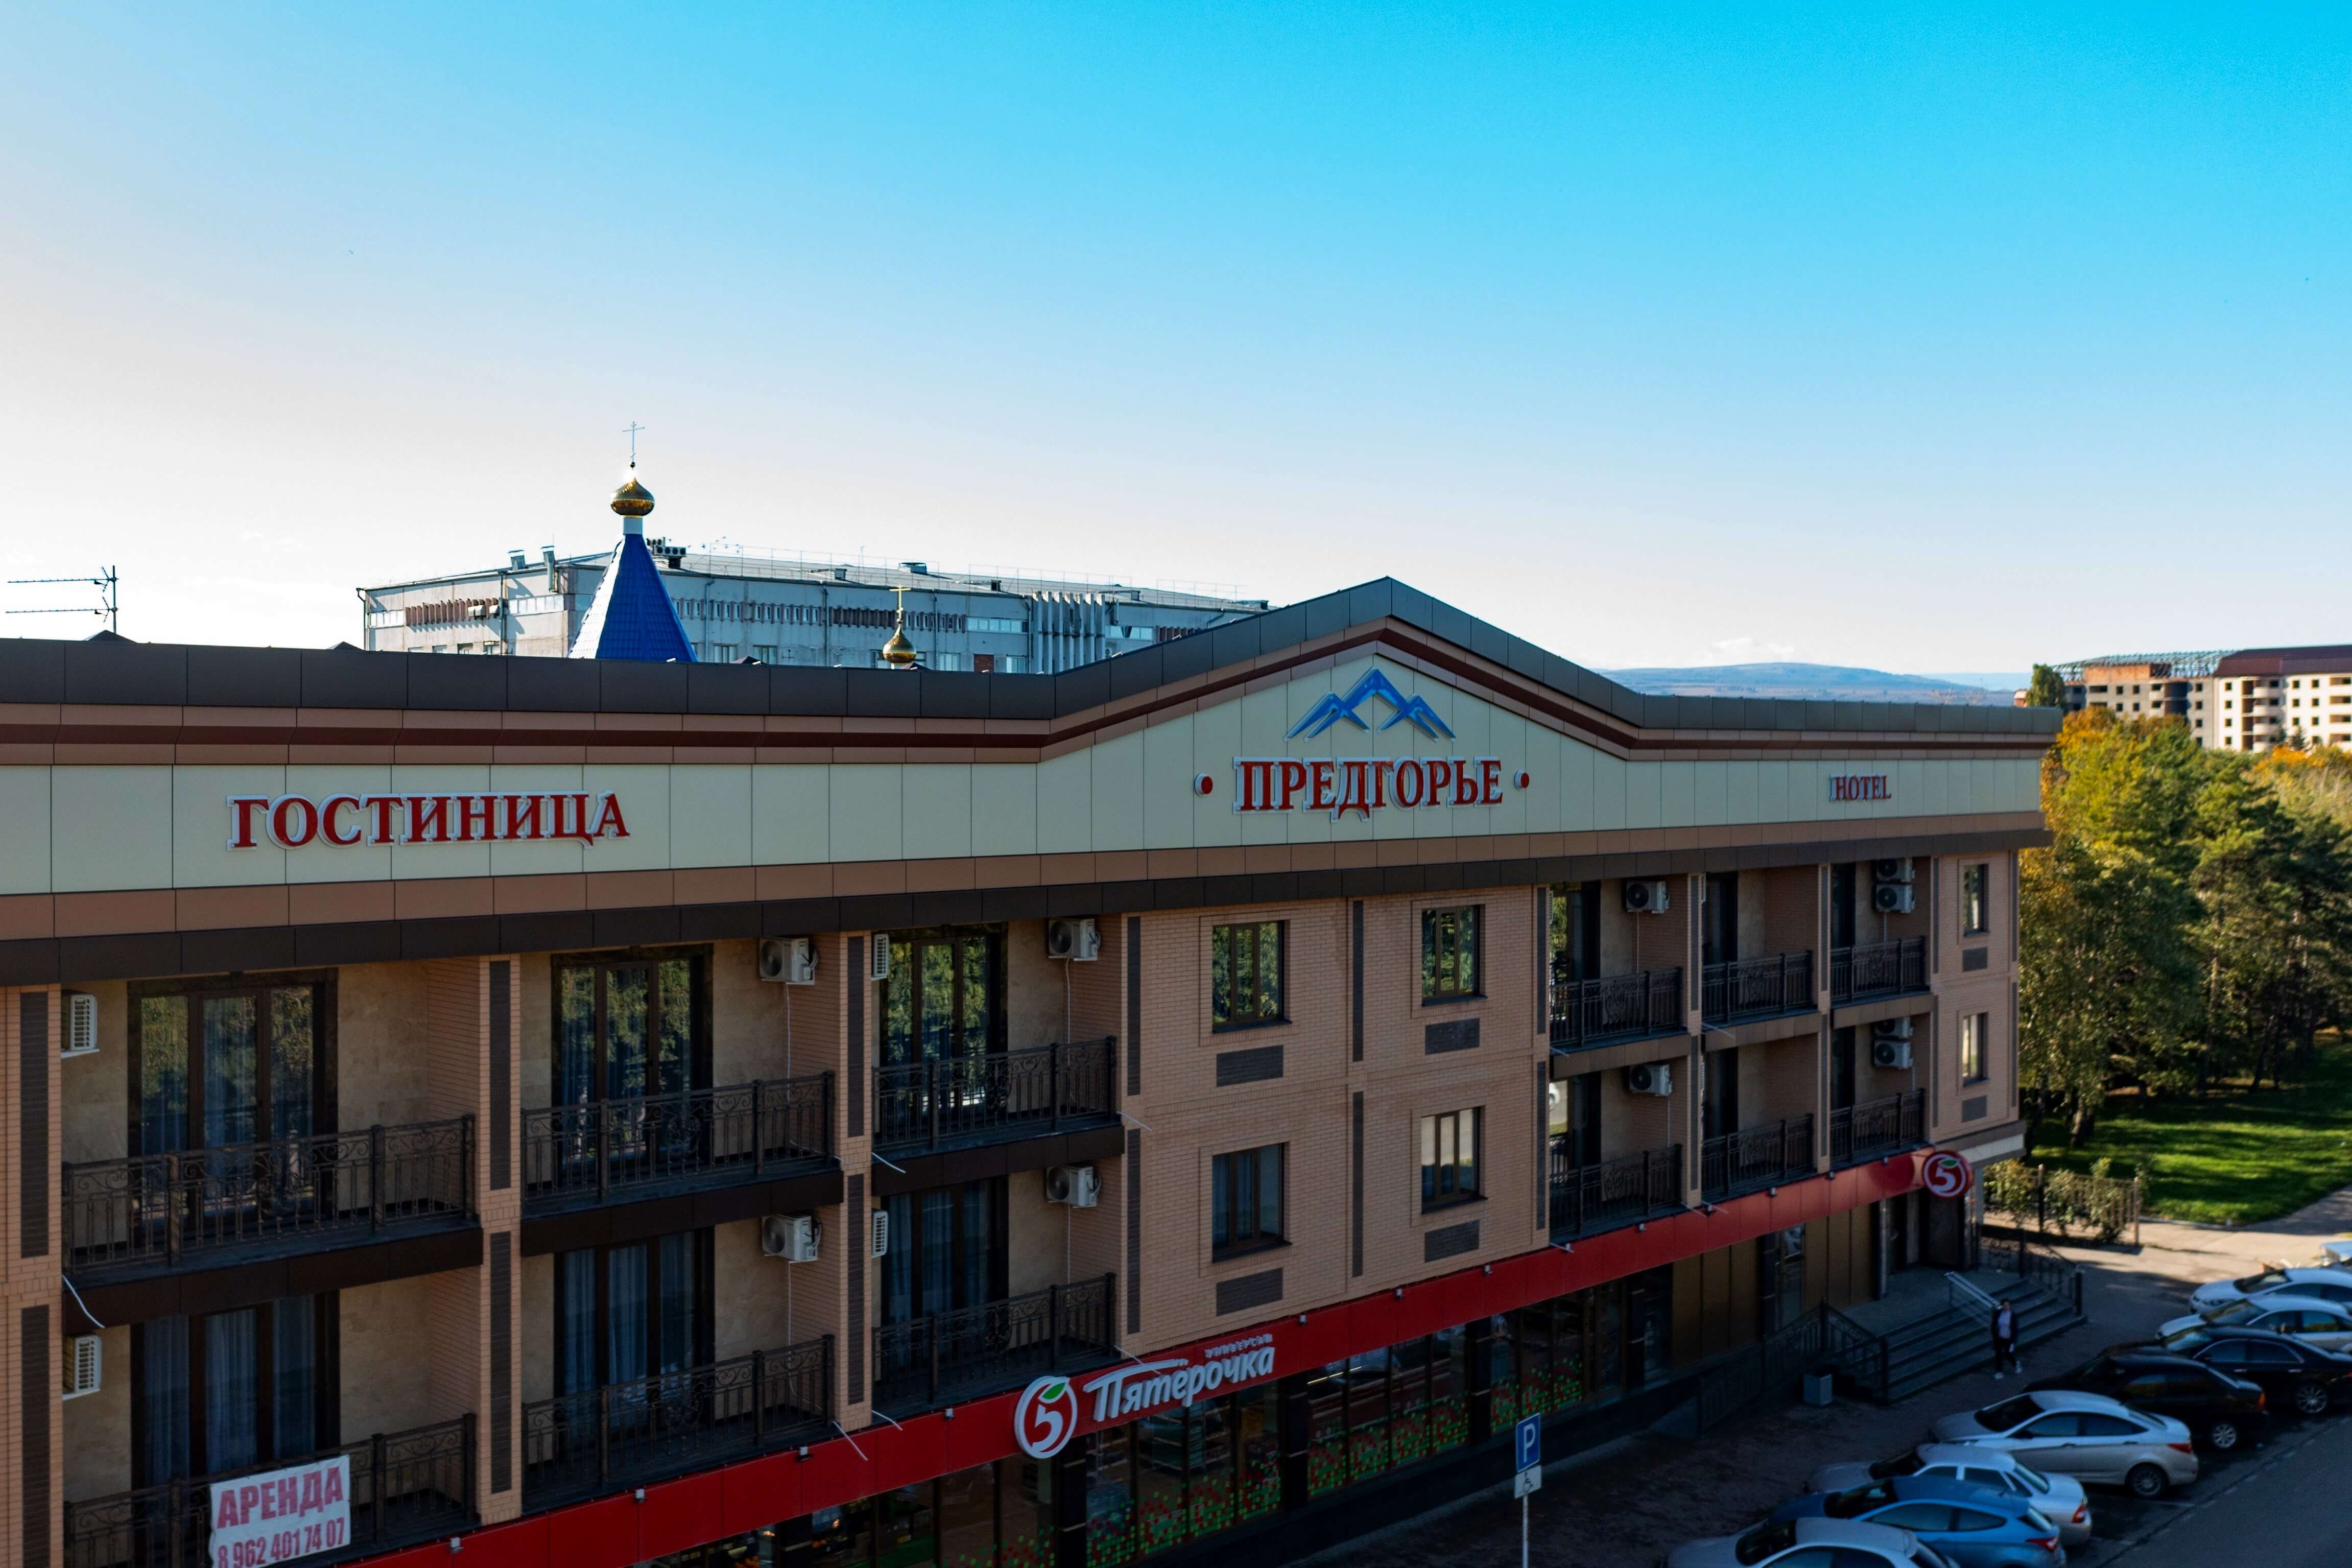 Панорамный вид на центральный фасад отеля. На первом этаже расположен магазин "Пятерочка".